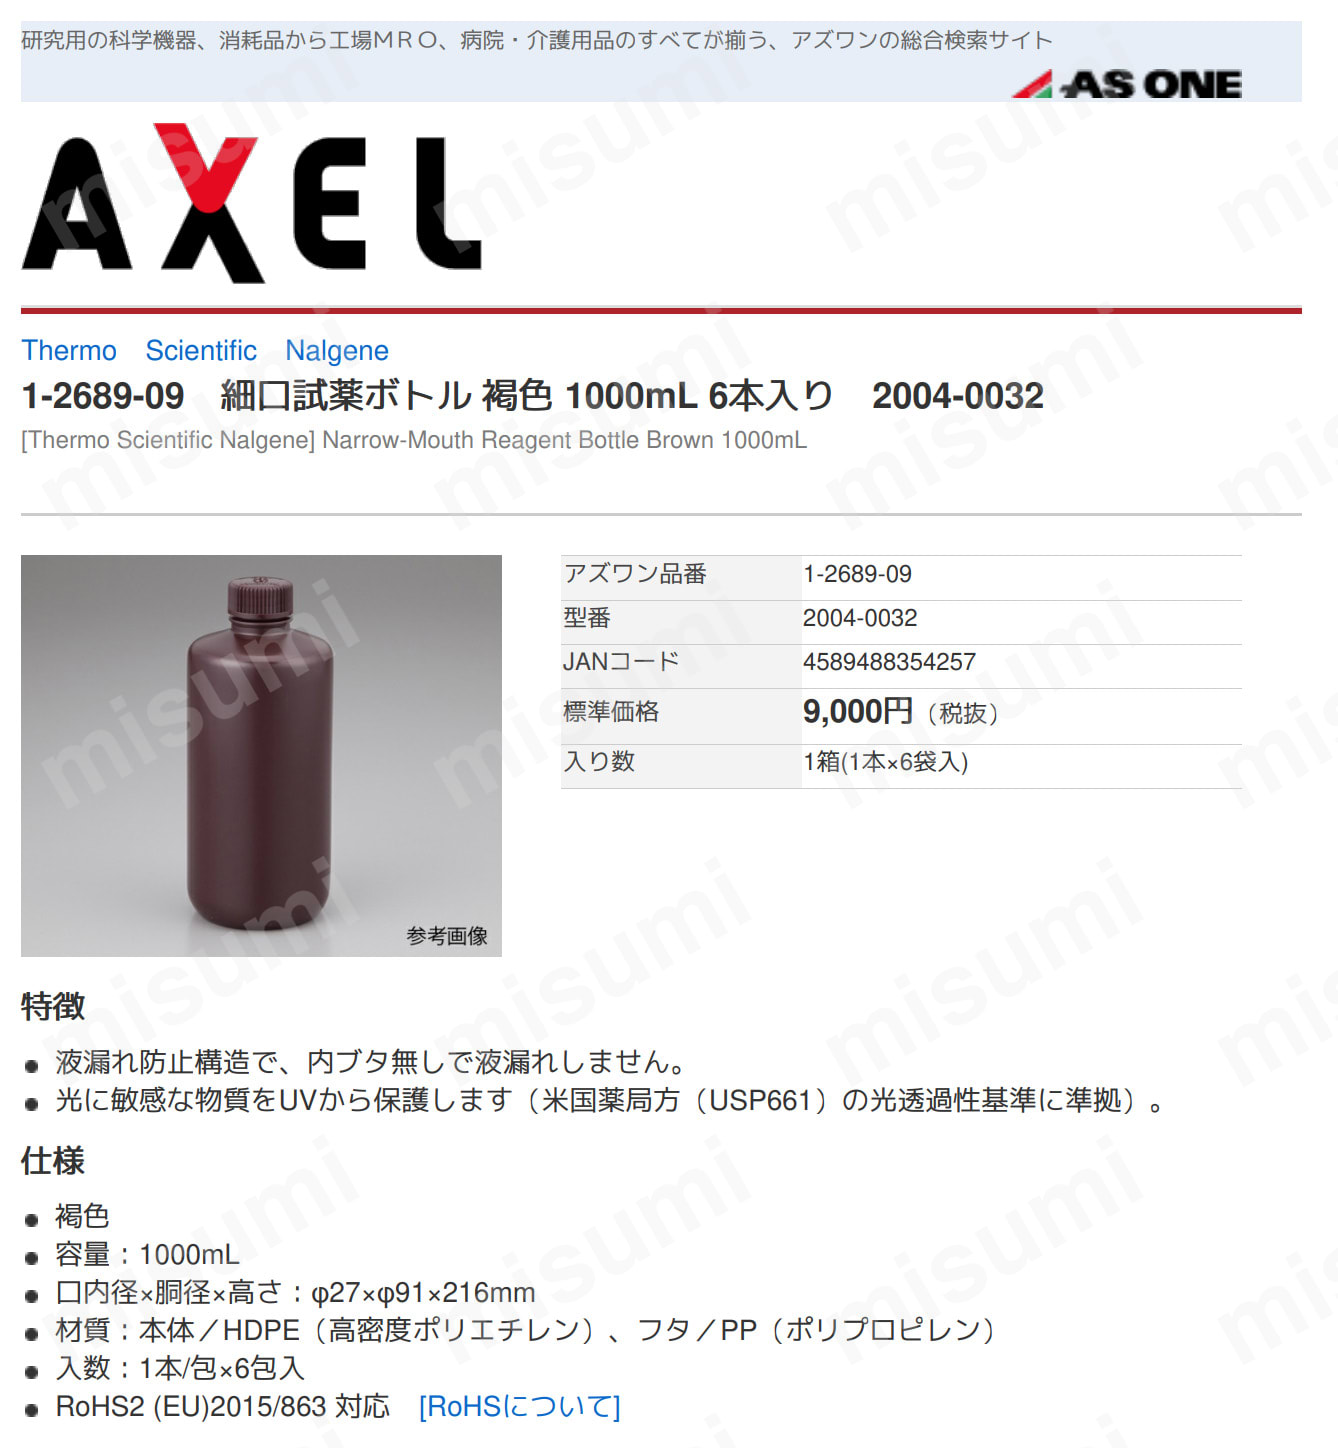 NalgenePE褐色細口試薬瓶(中栓なし) 2004-0032 ケニス MISUMI(ミスミ)